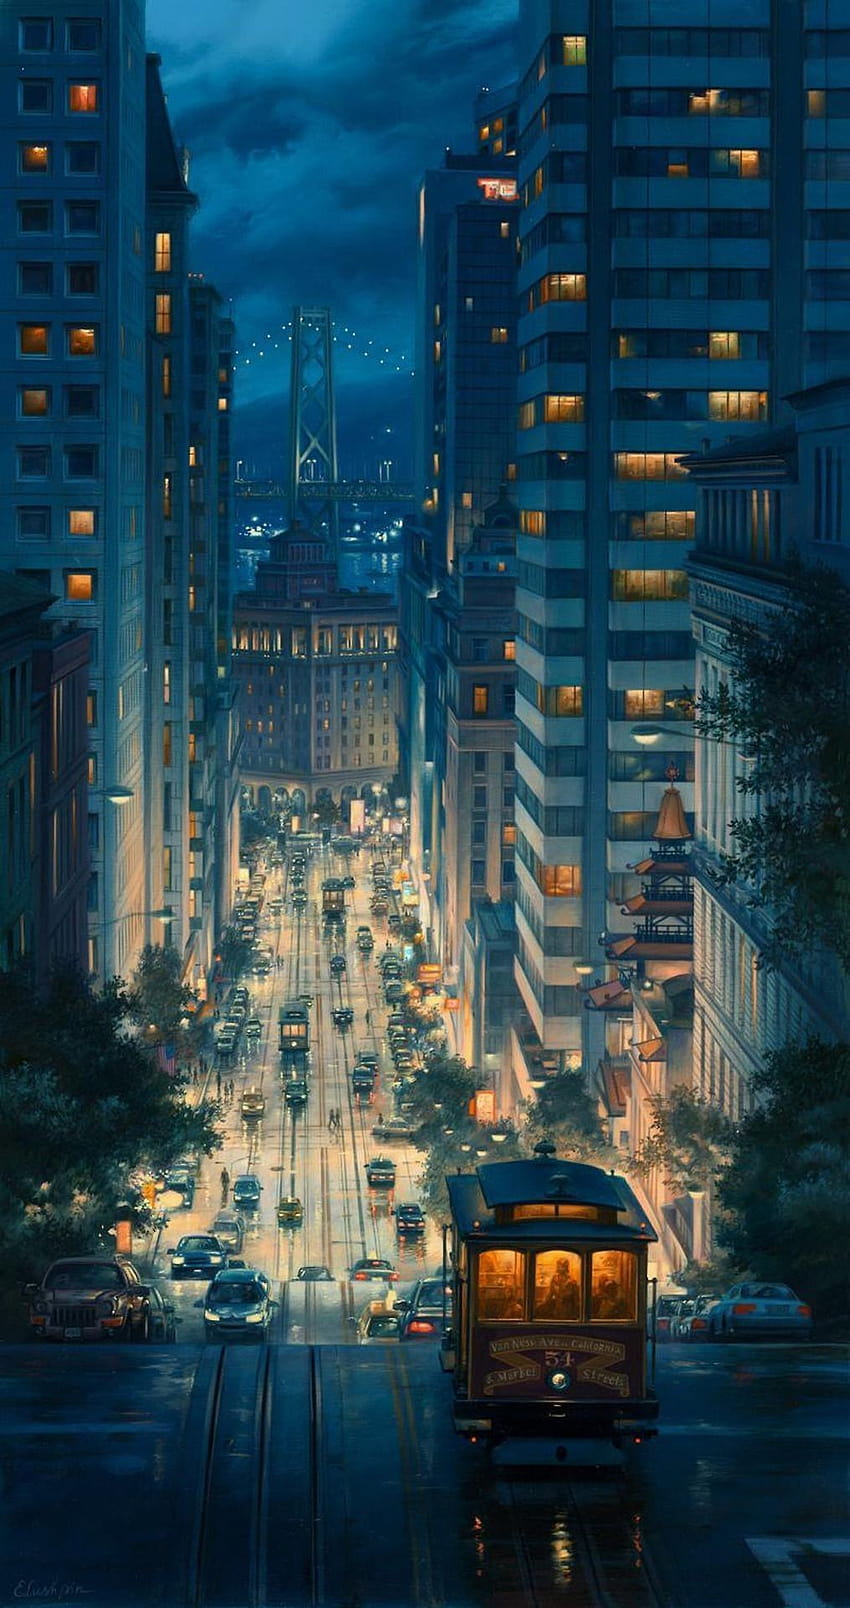 Anime Street on Dog, telepon kota malam anime wallpaper ponsel HD